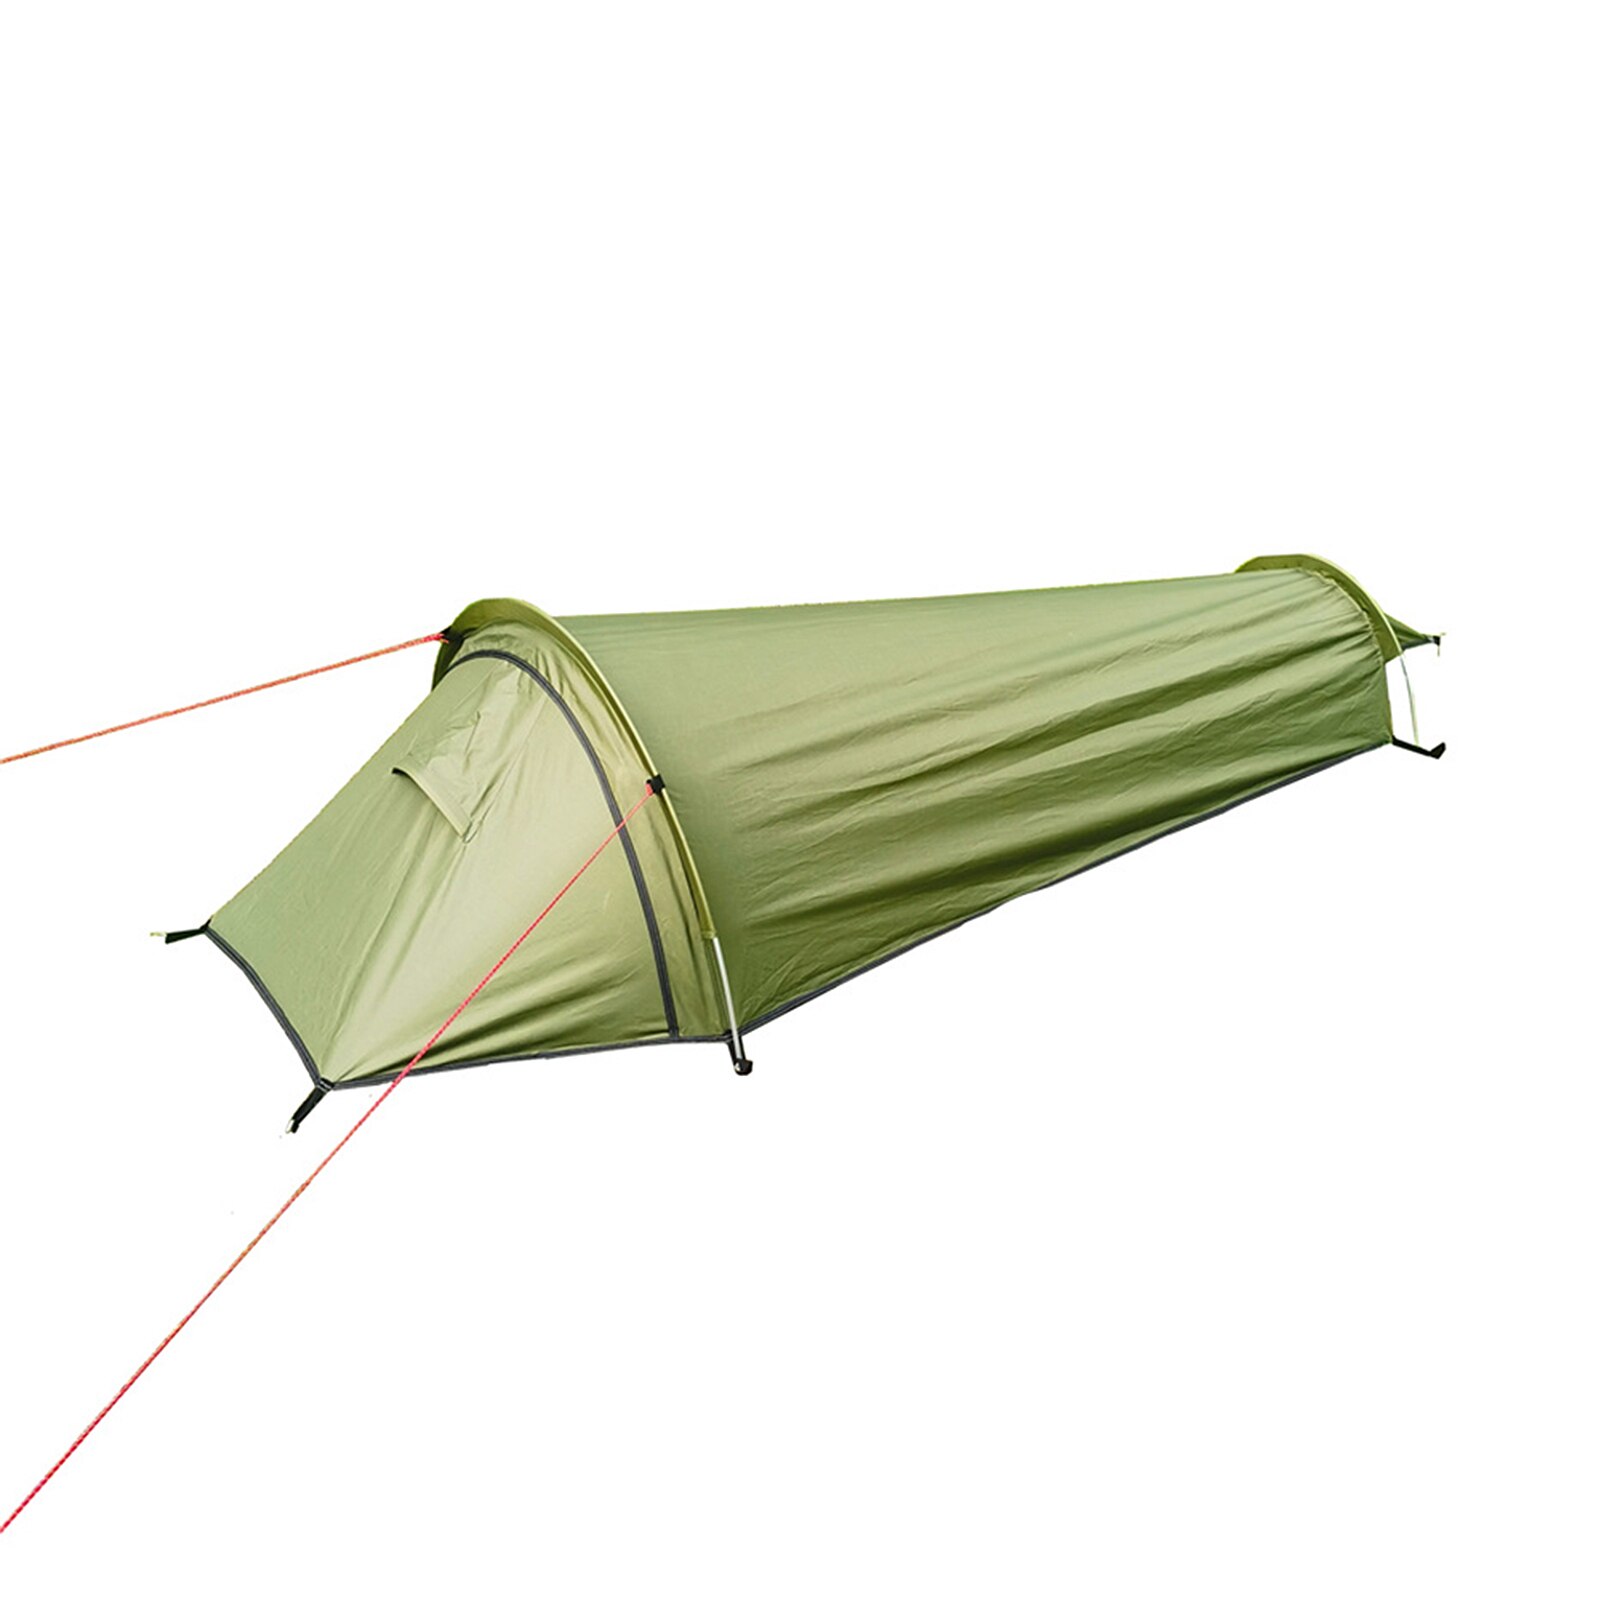 Ultralight Outdoor Camping Tent Enkele Persoon Camping Tent Draagbare Slaapzak Tent Camping Tent Reizen